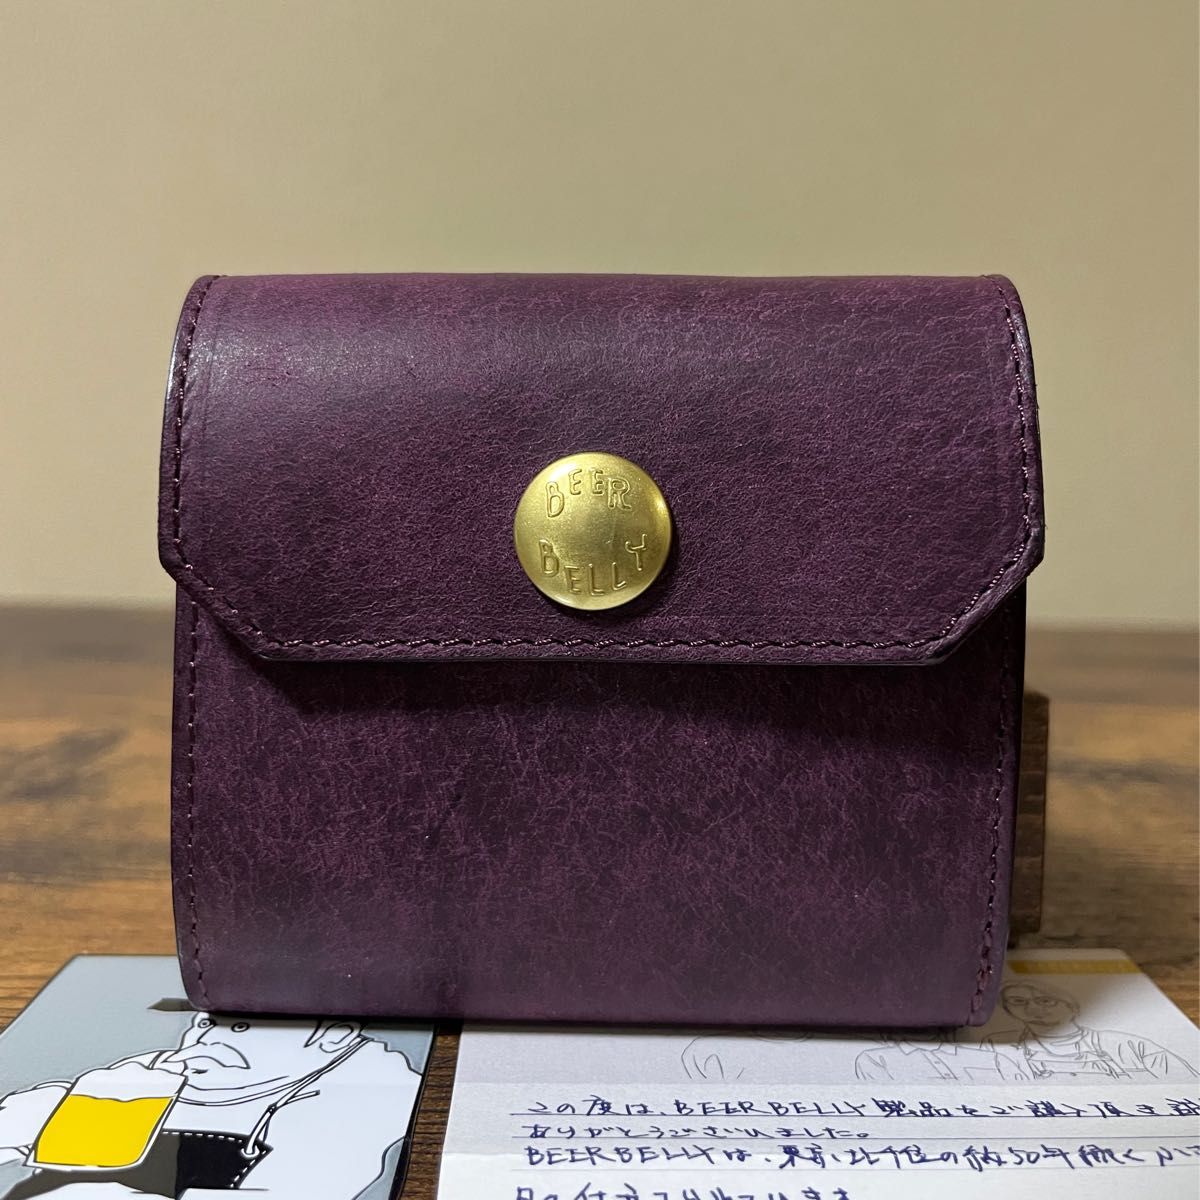 未使用品 ビアベリー ハッチバック 10周年限定色 プエブロプルーニャ 二つ折り財布